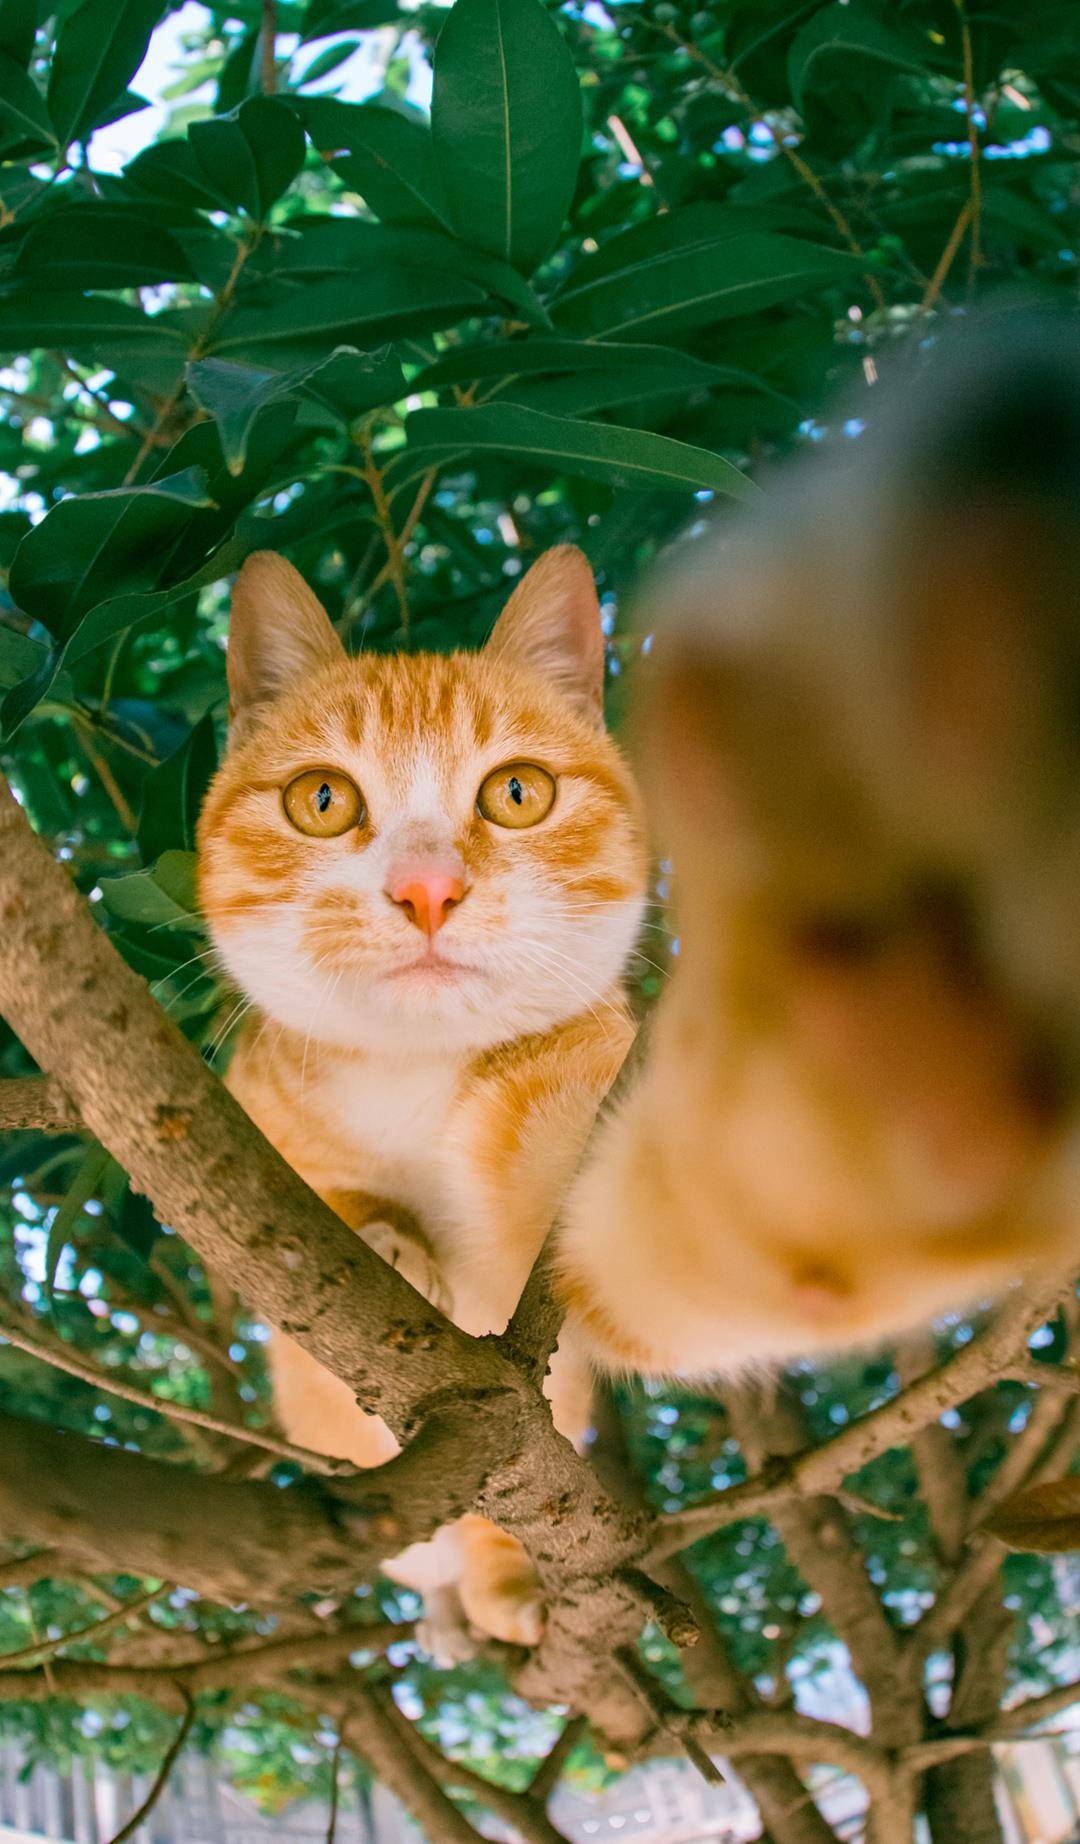 农村里的小橘猫,长得好看又顽皮,上树,刨沙,滚菜园无所不玩!